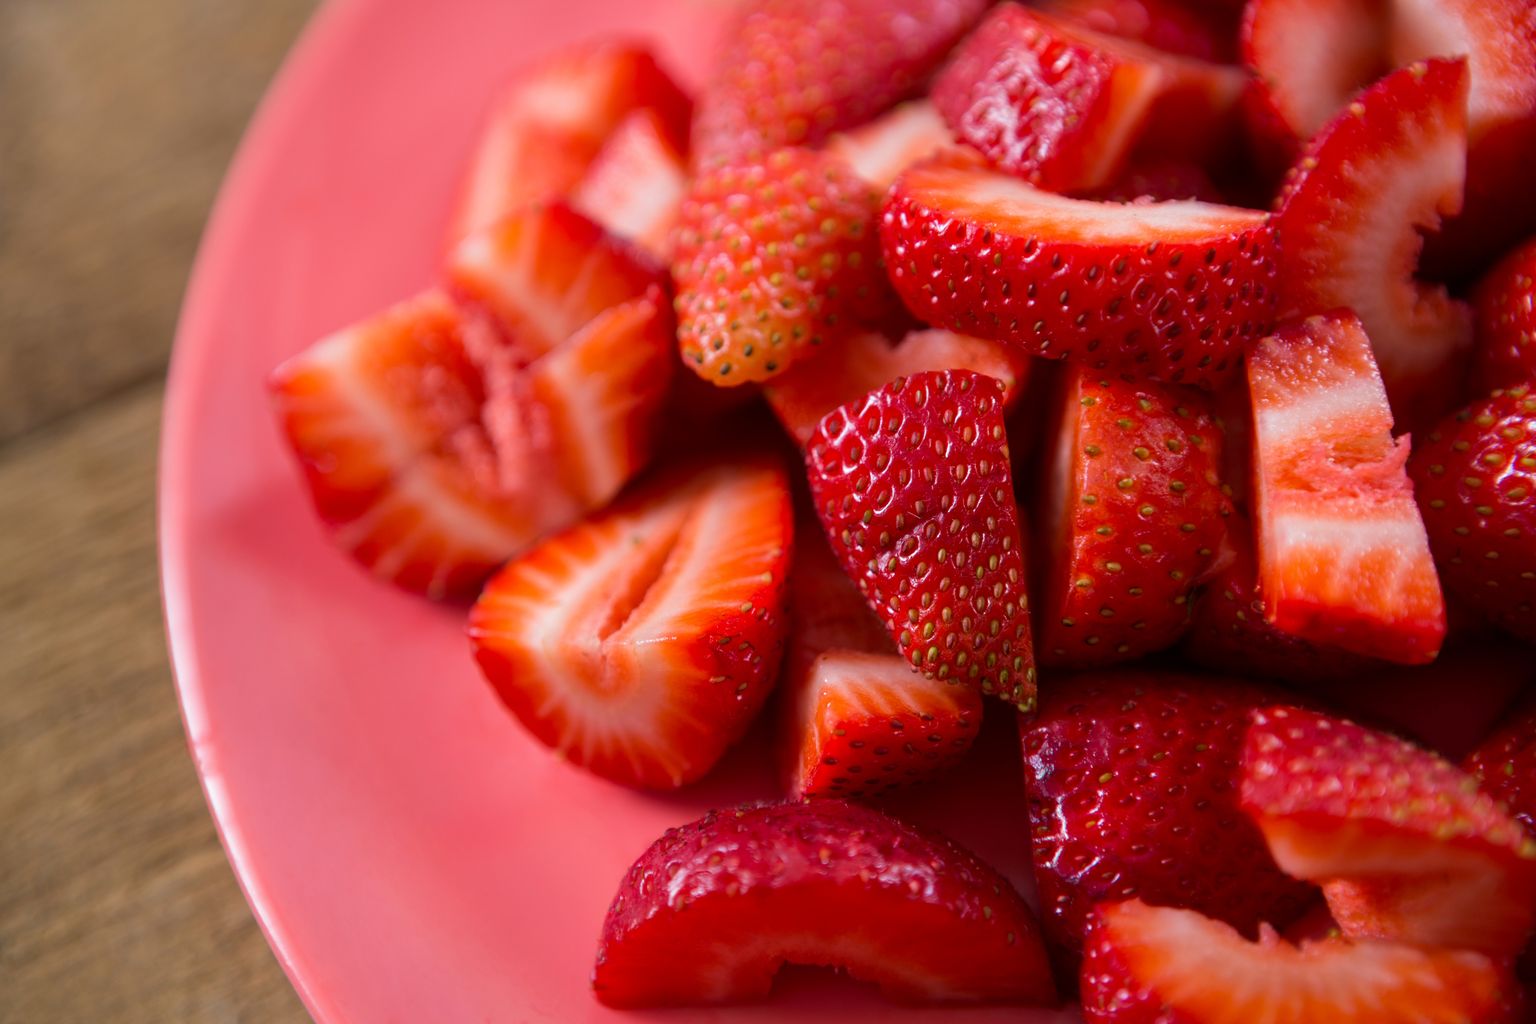 Abiks on näiteks maasikad.